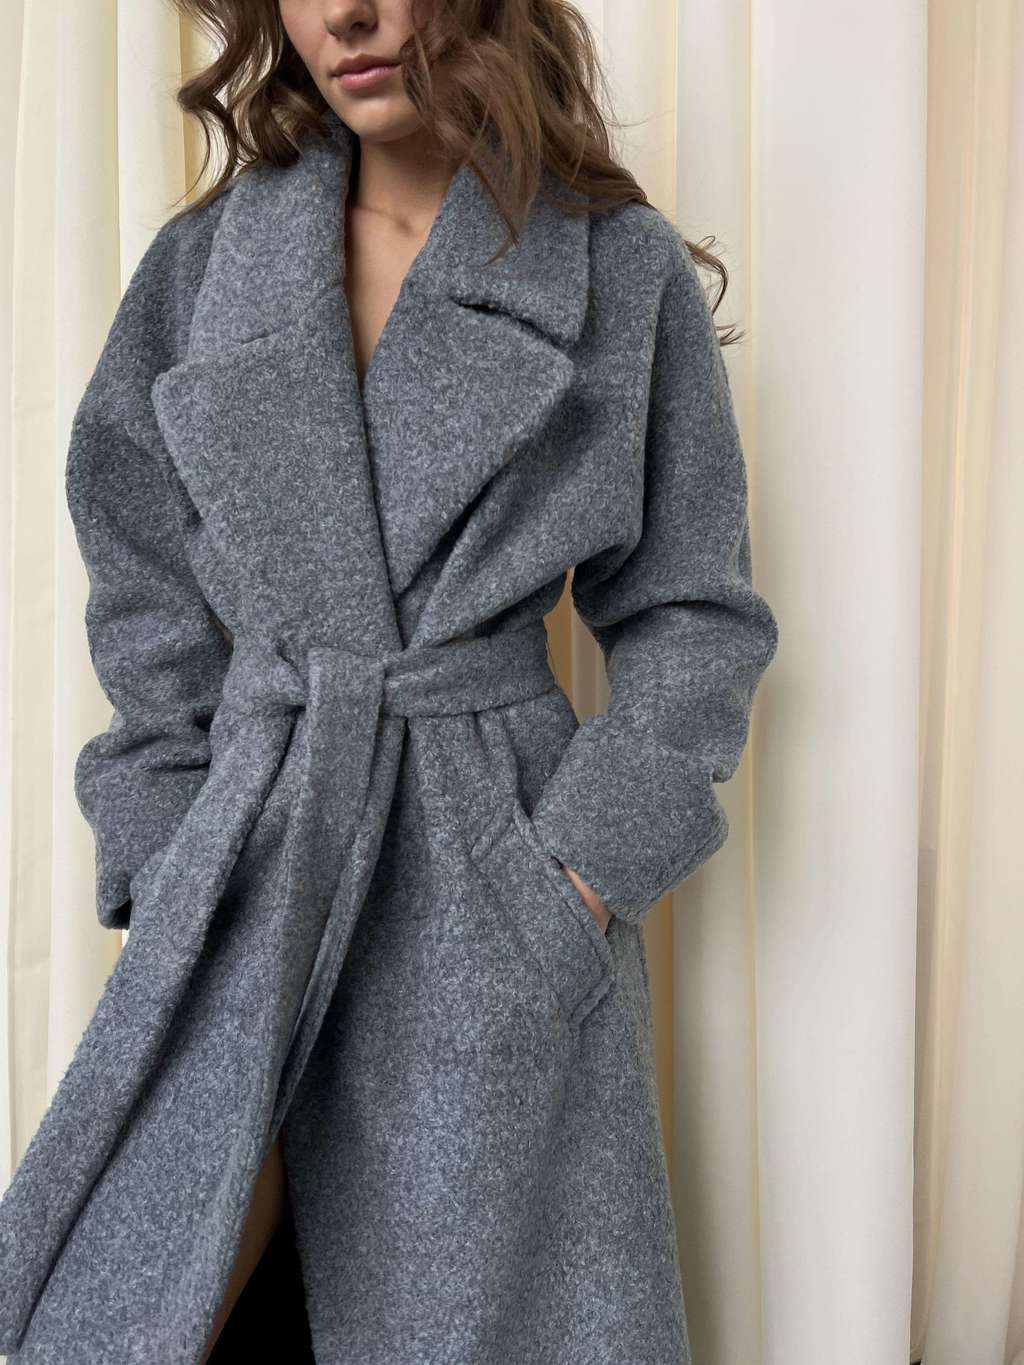 ПАЛЬТО ДЕМИСЕЗОННОЕ > Пальто-халат с цельнокройным рукавом из овечьей шерсти  цвета винтажный синий купить в интернет-магазине